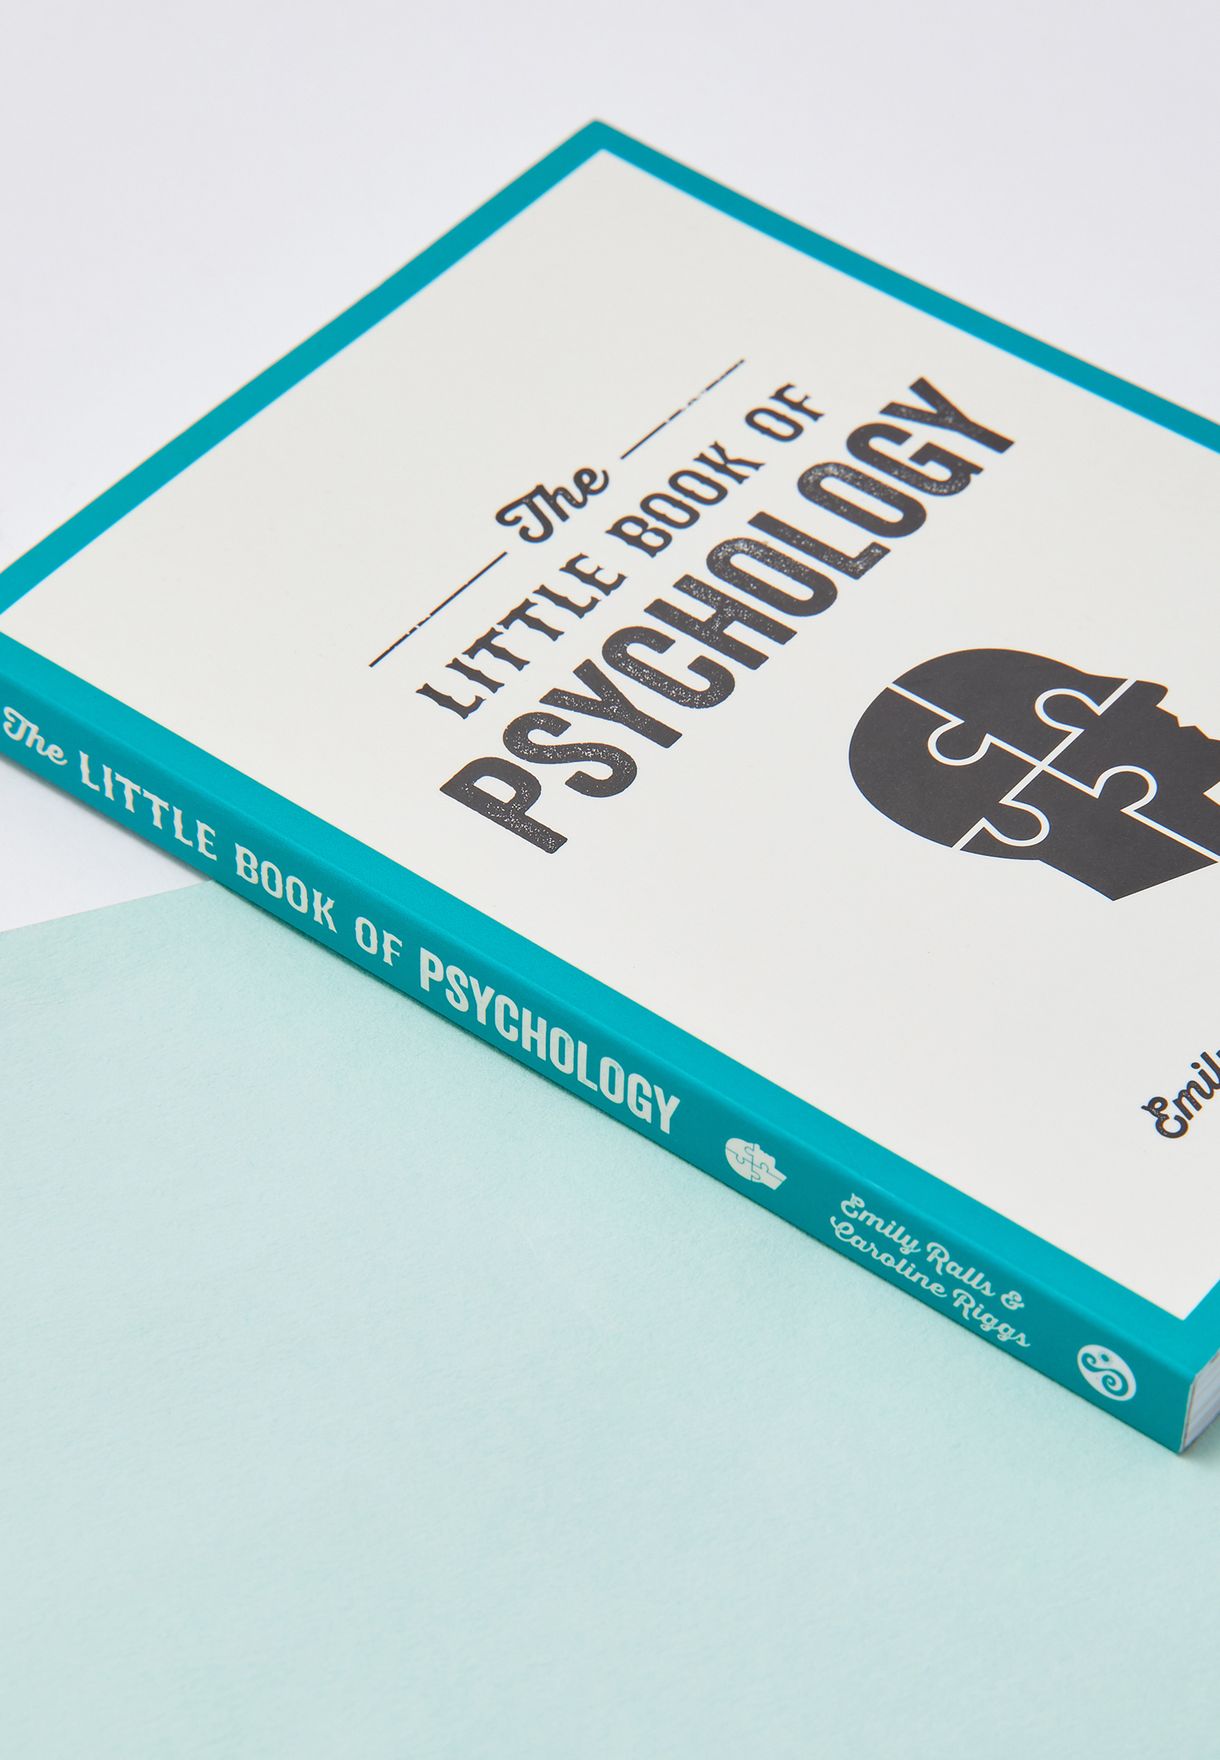 كتاب "كتيب علم النفس"